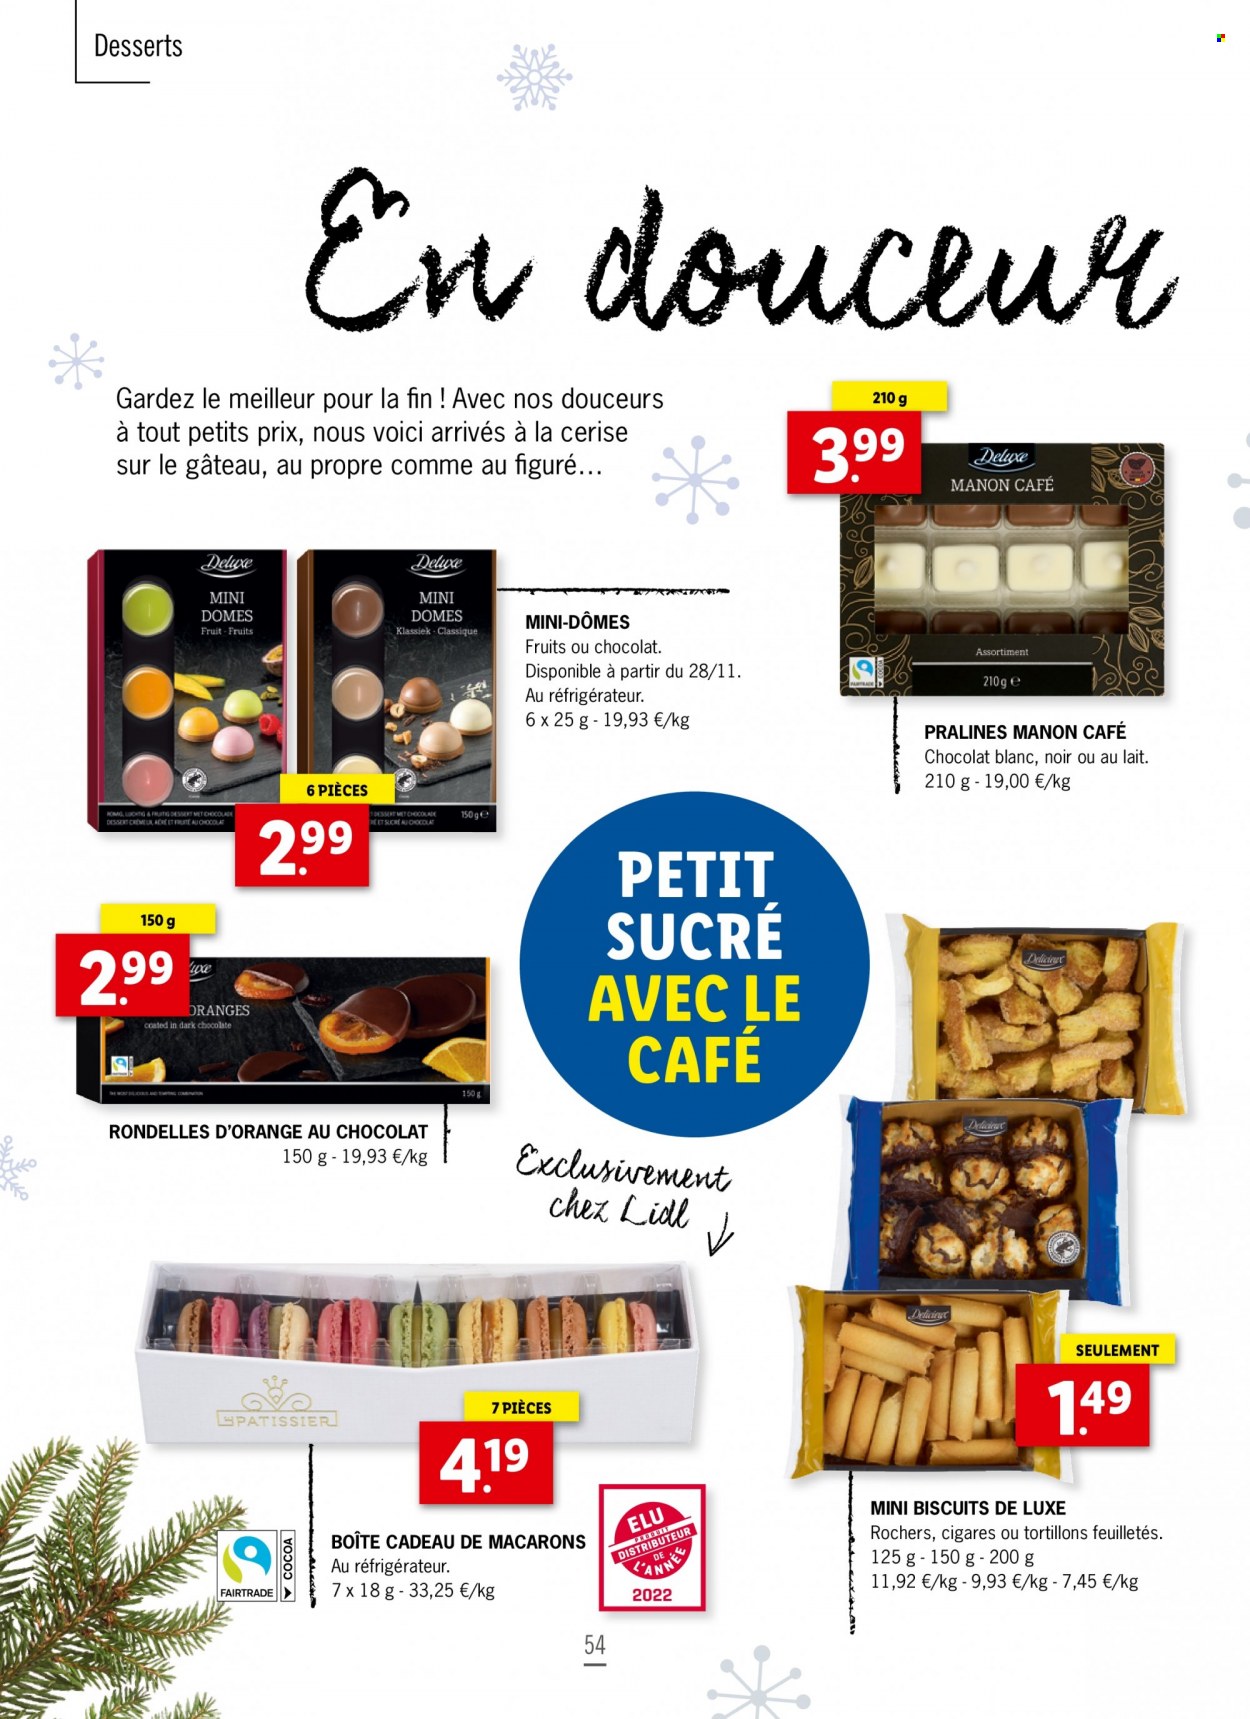 thumbnail - Catalogue Lidl - Produits soldés - oranges, macarons, dessert, biscuits, pralinés. Page 54.